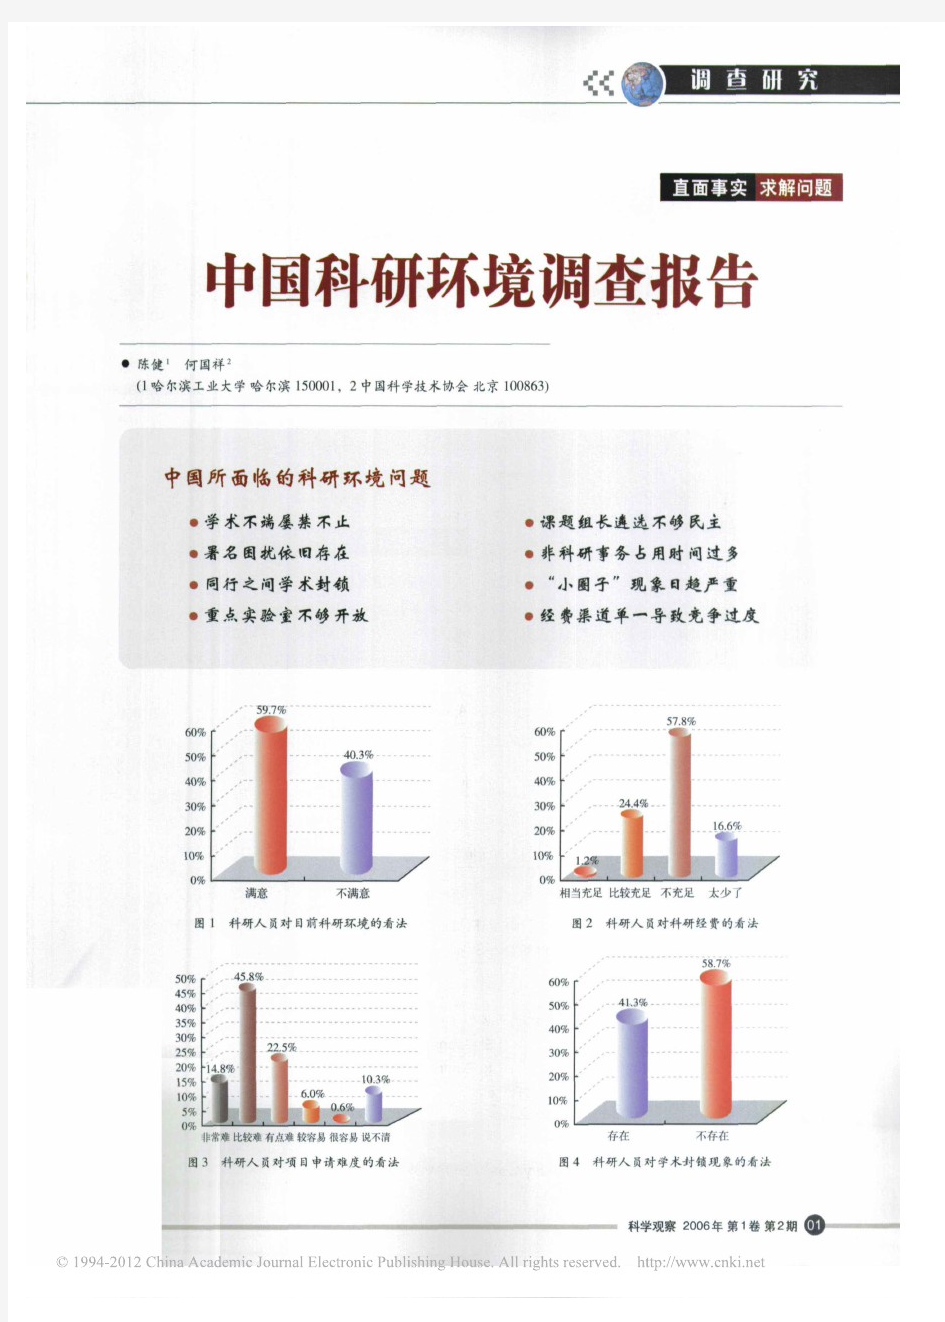 中国科研环境调查报告